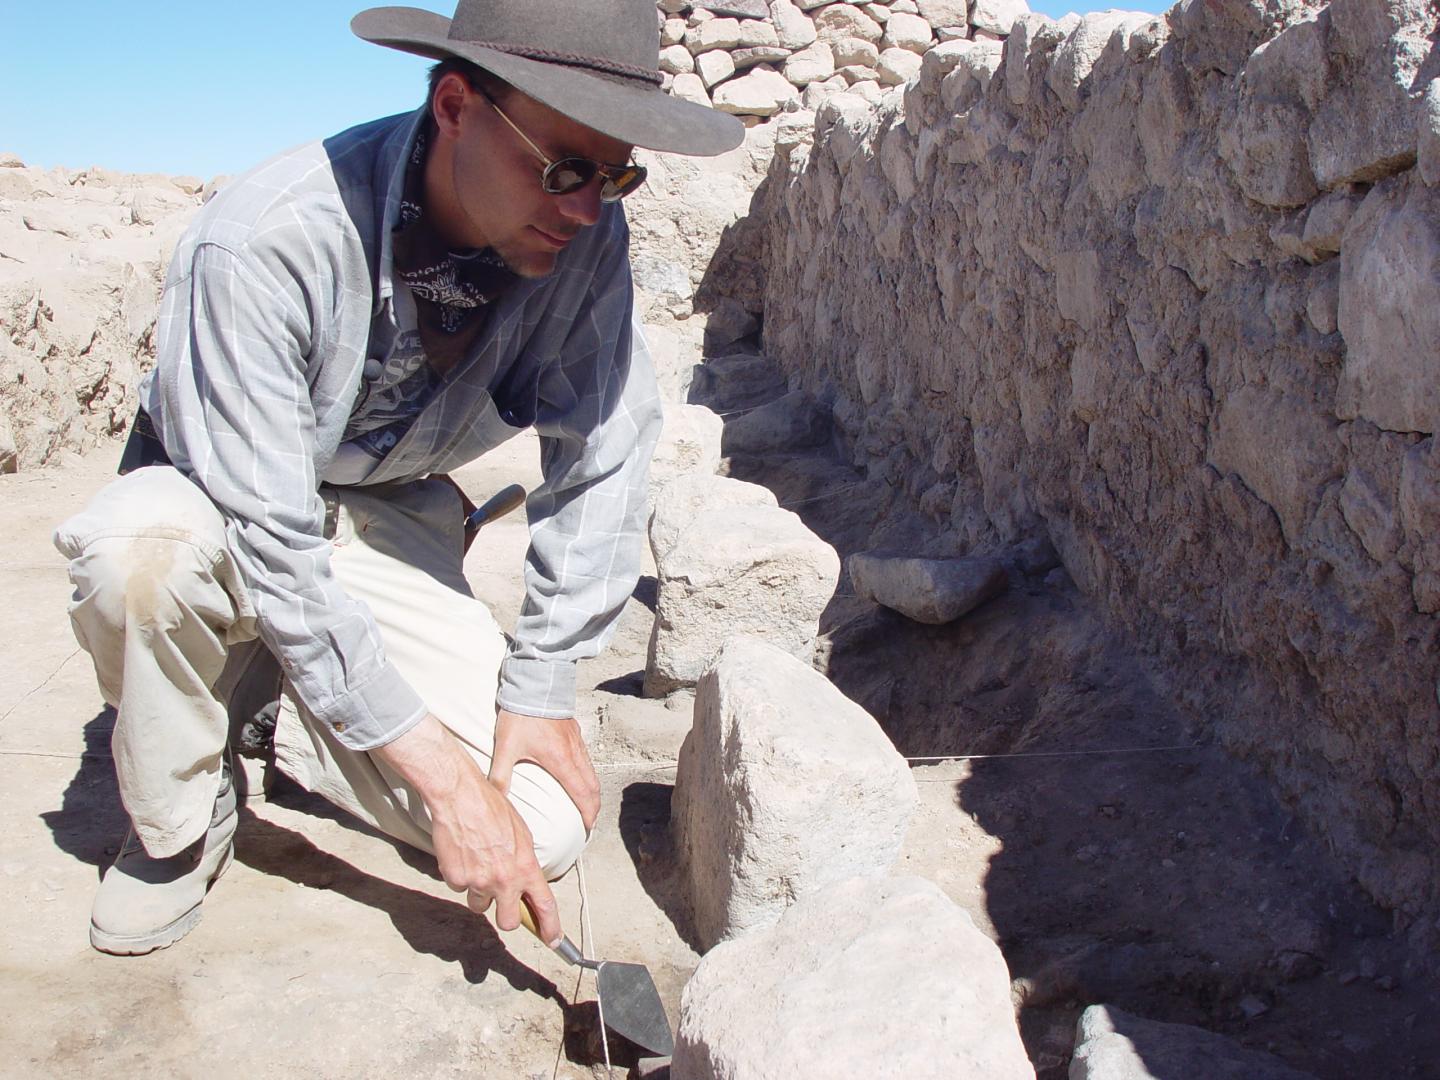 Excavating in Cerro Baul